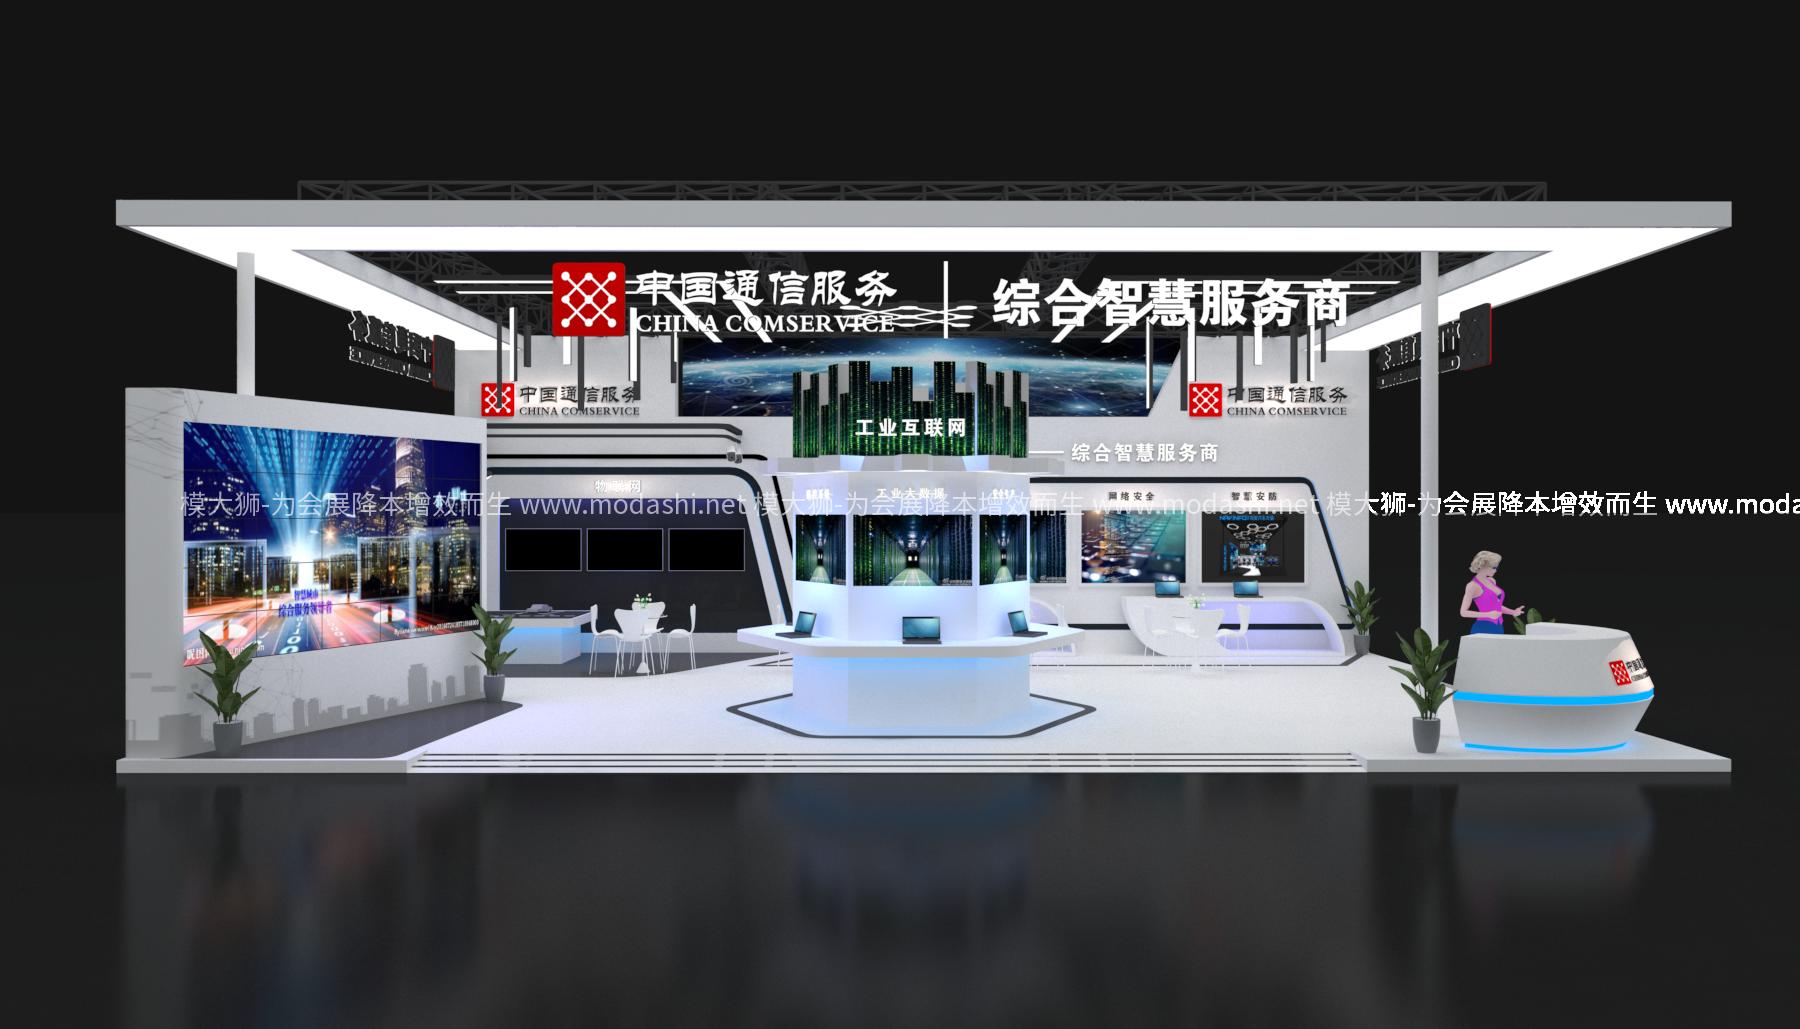 中国通服展览展示展台 模型